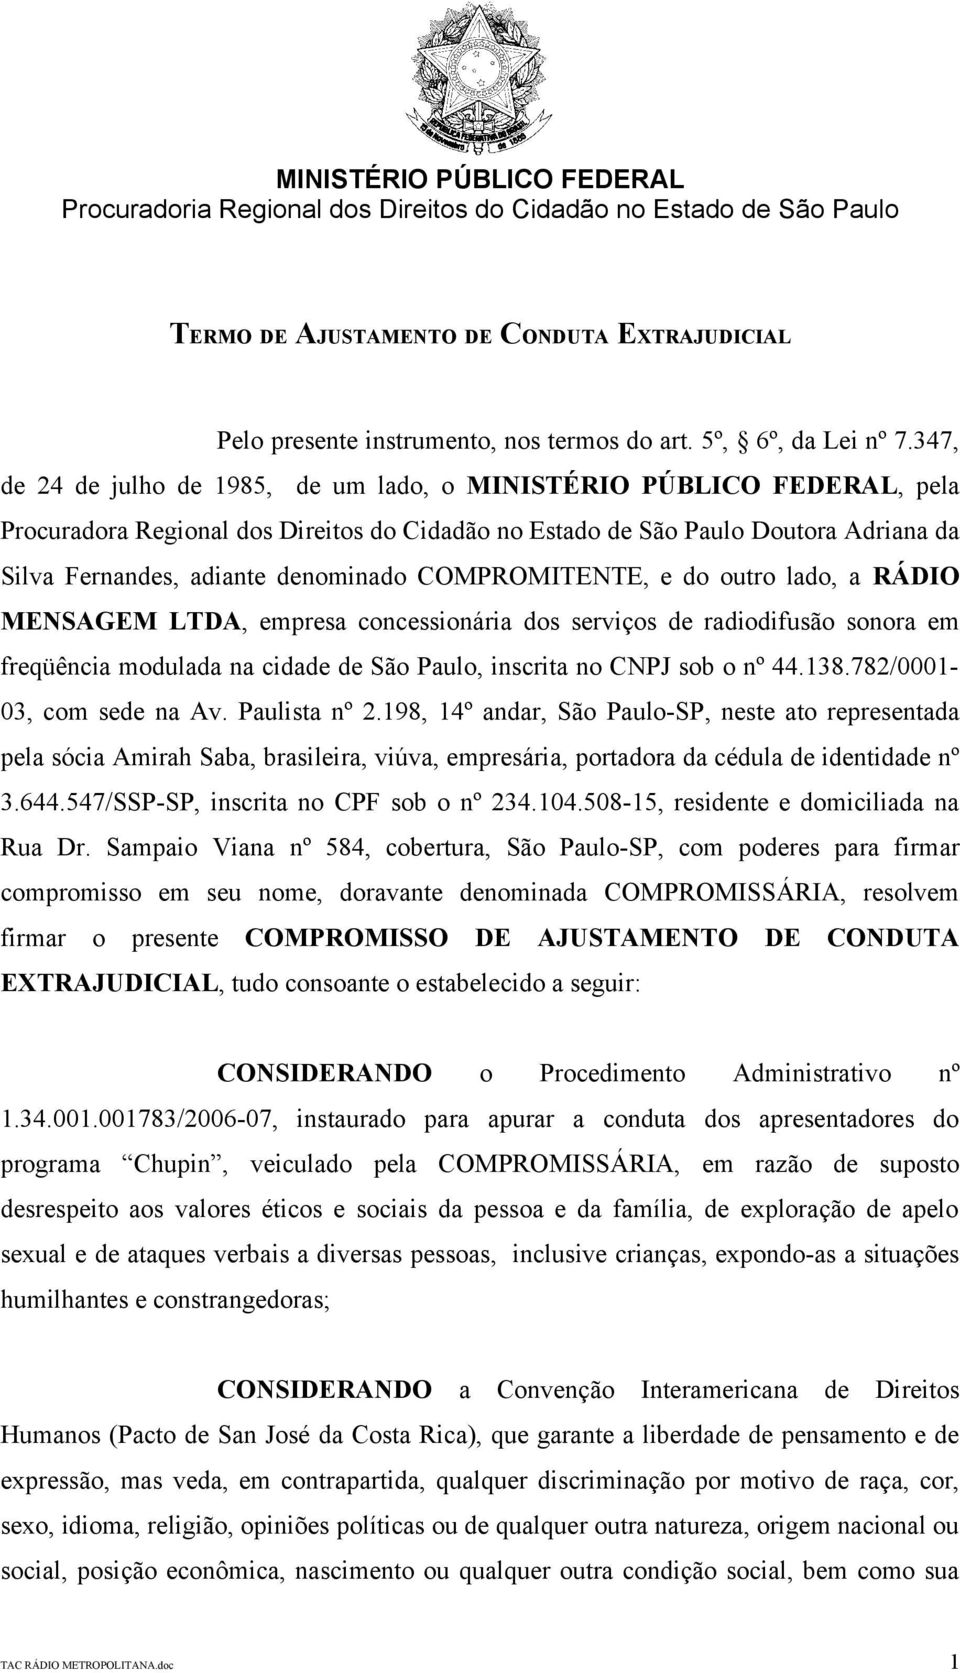 COMPROMITENTE, e do outro lado, a RÁDIO MENSAGEM LTDA, empresa concessionária dos serviços de radiodifusão sonora em freqüência modulada na cidade de São Paulo, inscrita no CNPJ sob o nº 44.138.